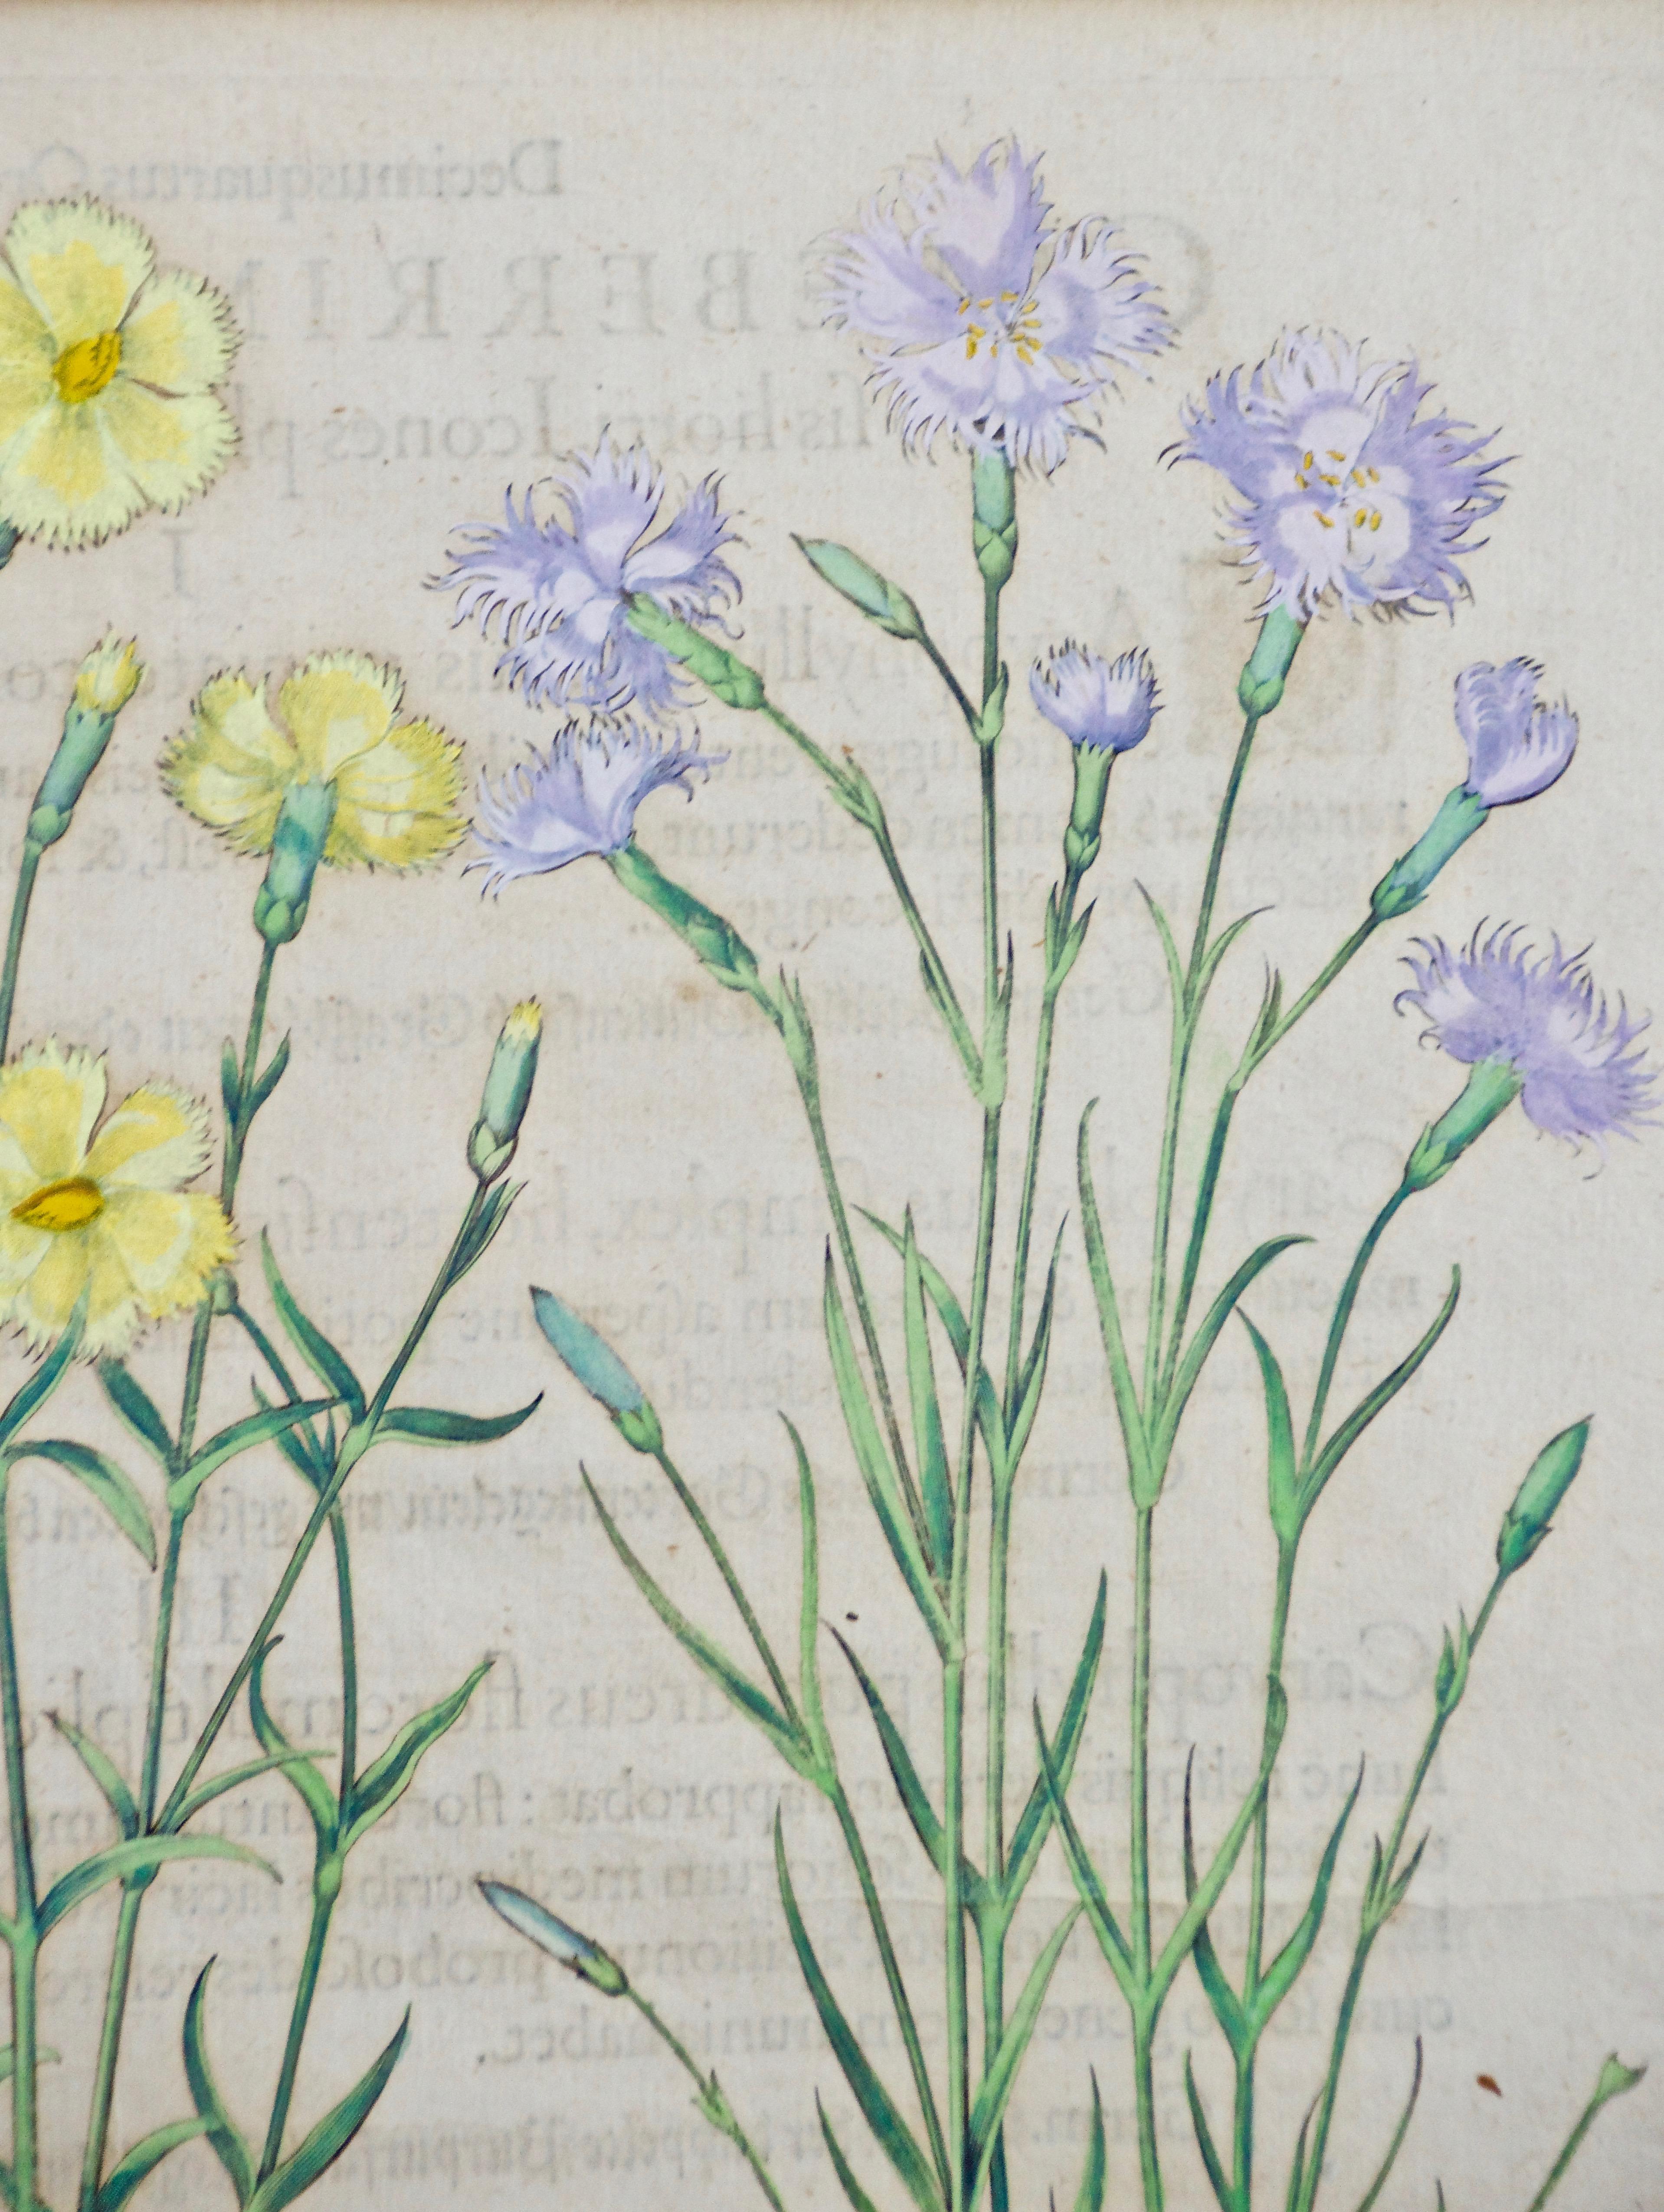 Besler Handkolorierte botanische Gravur von rosa und rosa Blumen im Landhausstil (Alte Meister), Print, von Basilius Besler